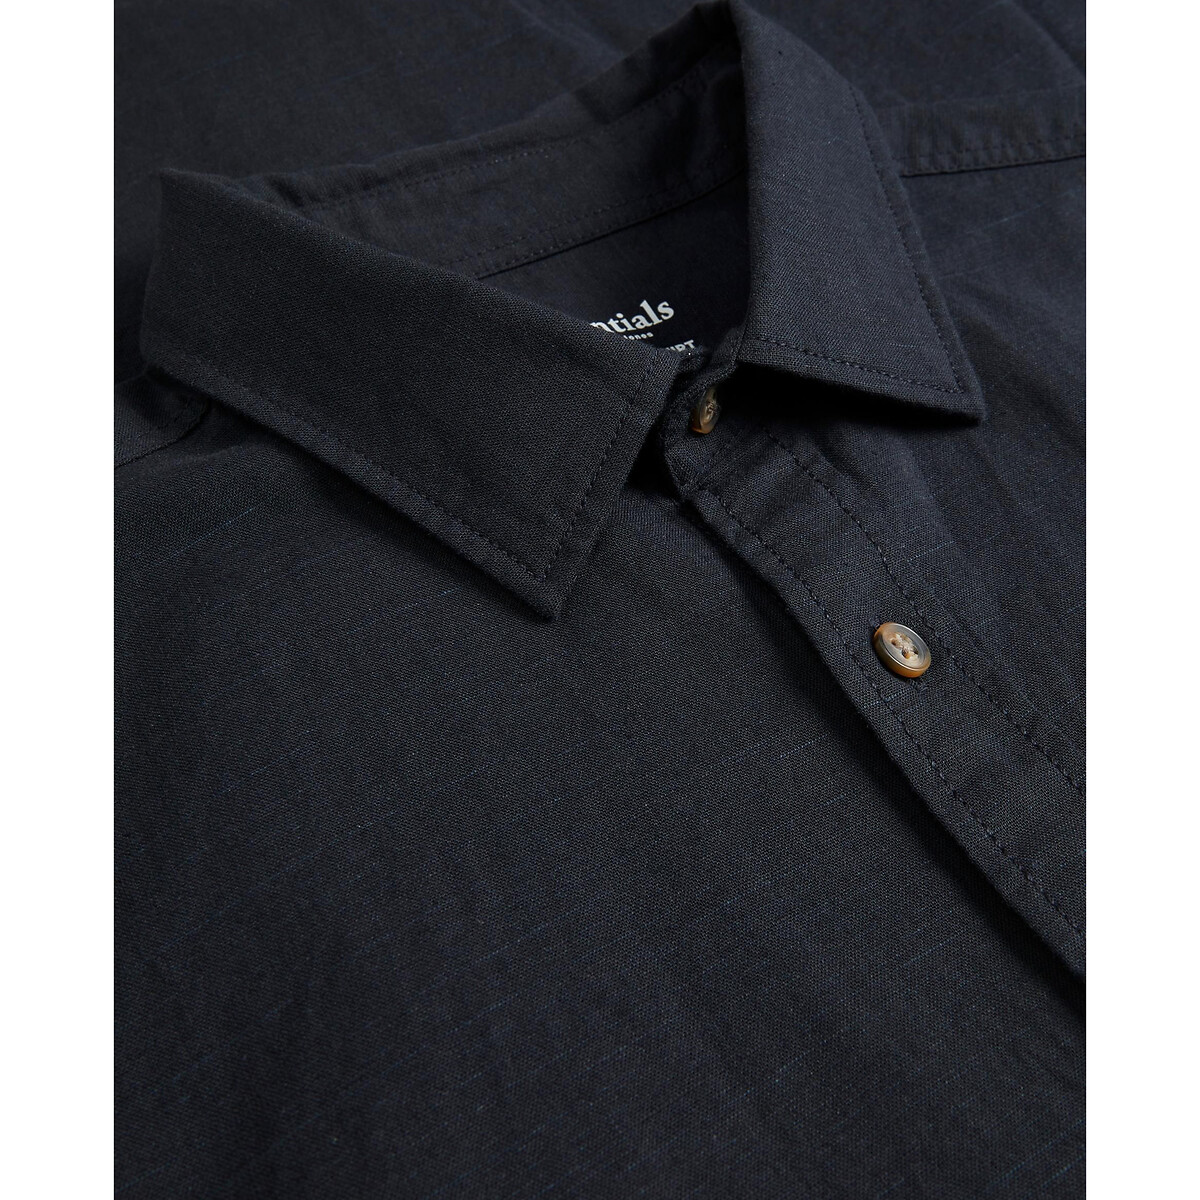 Рубашка Однотонная L черный LaRedoute, размер L - фото 1